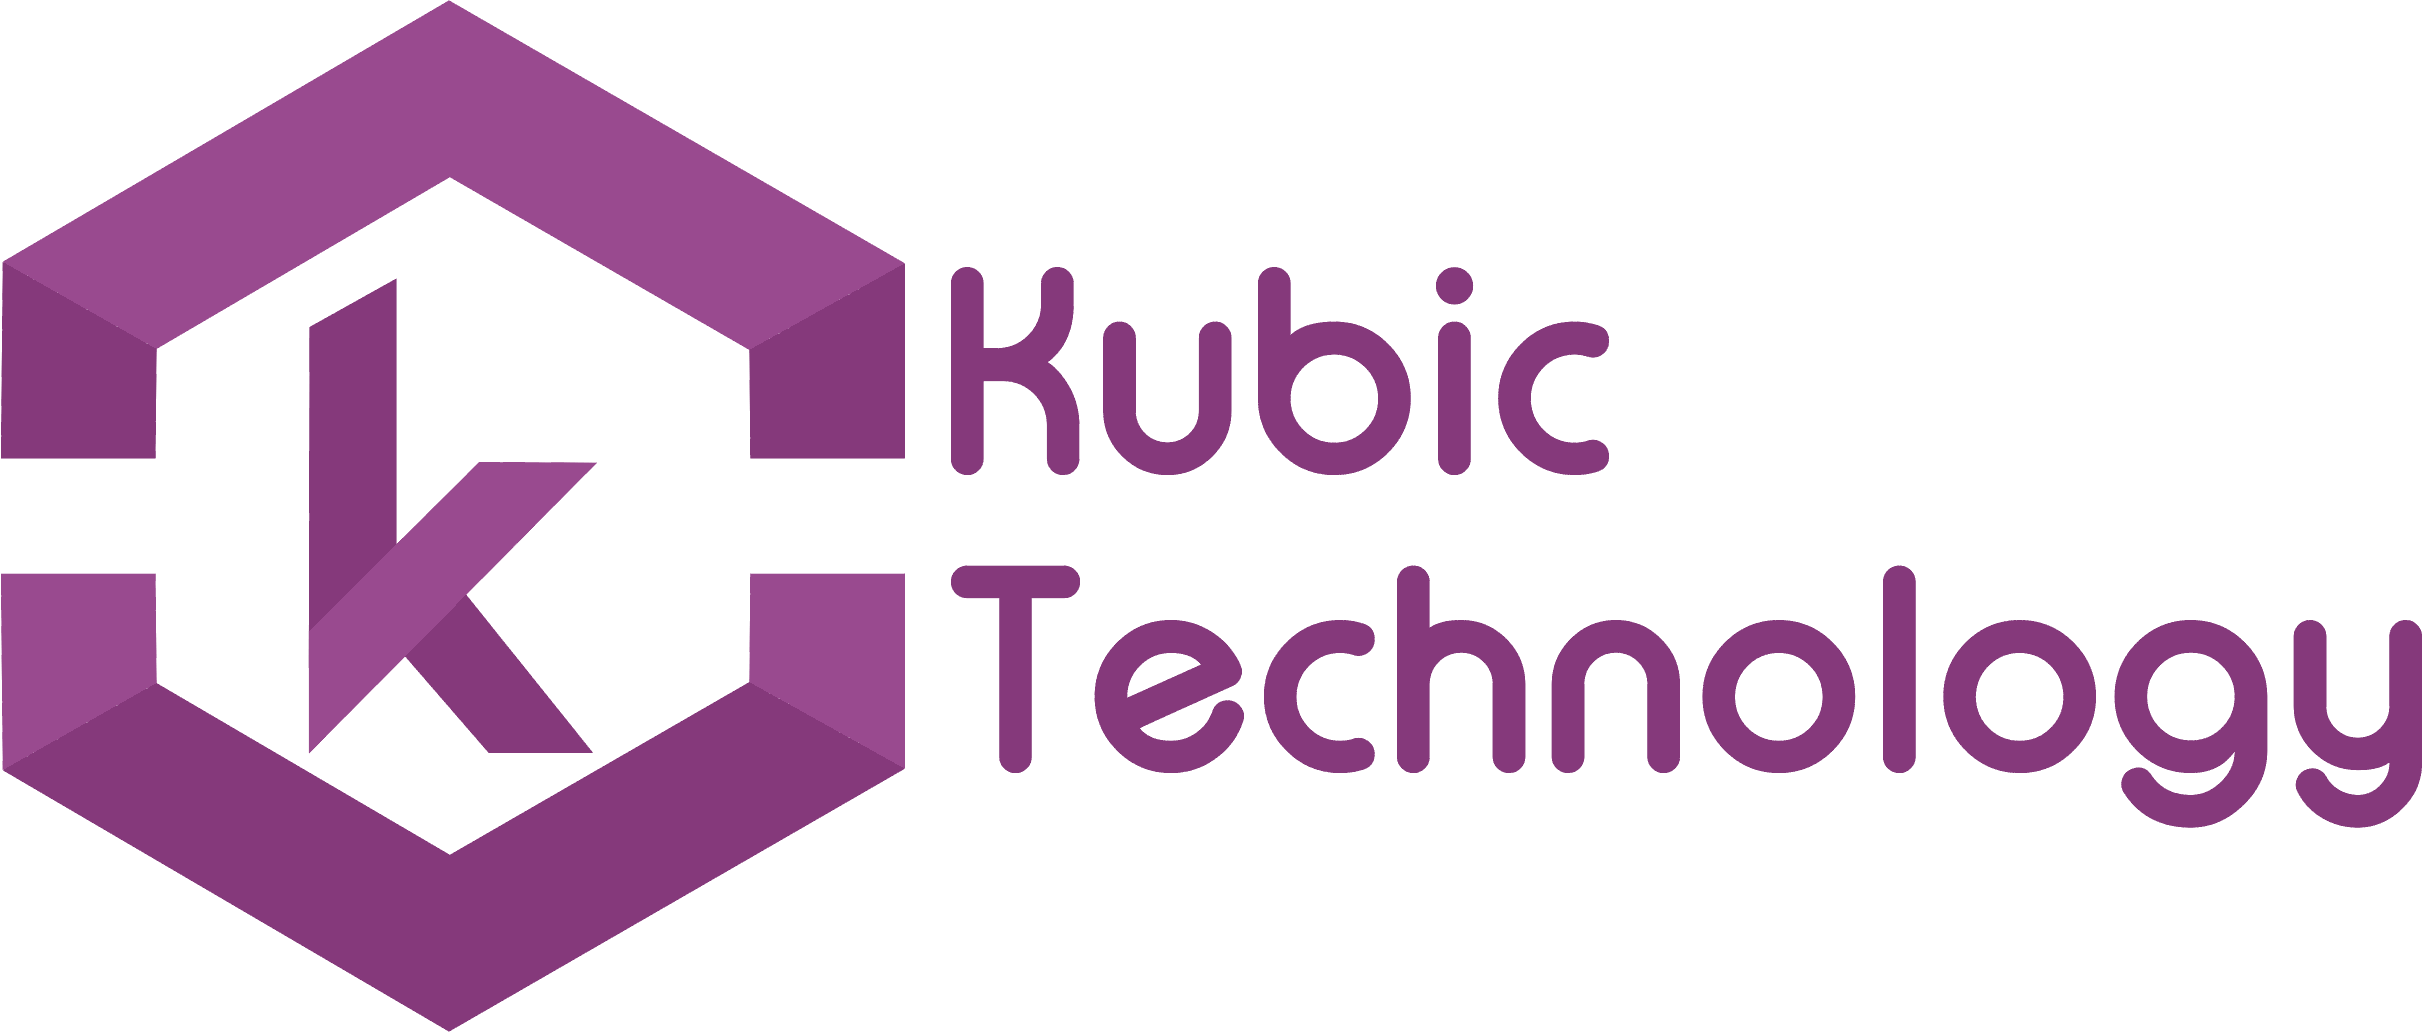 Kubic Technology Logo